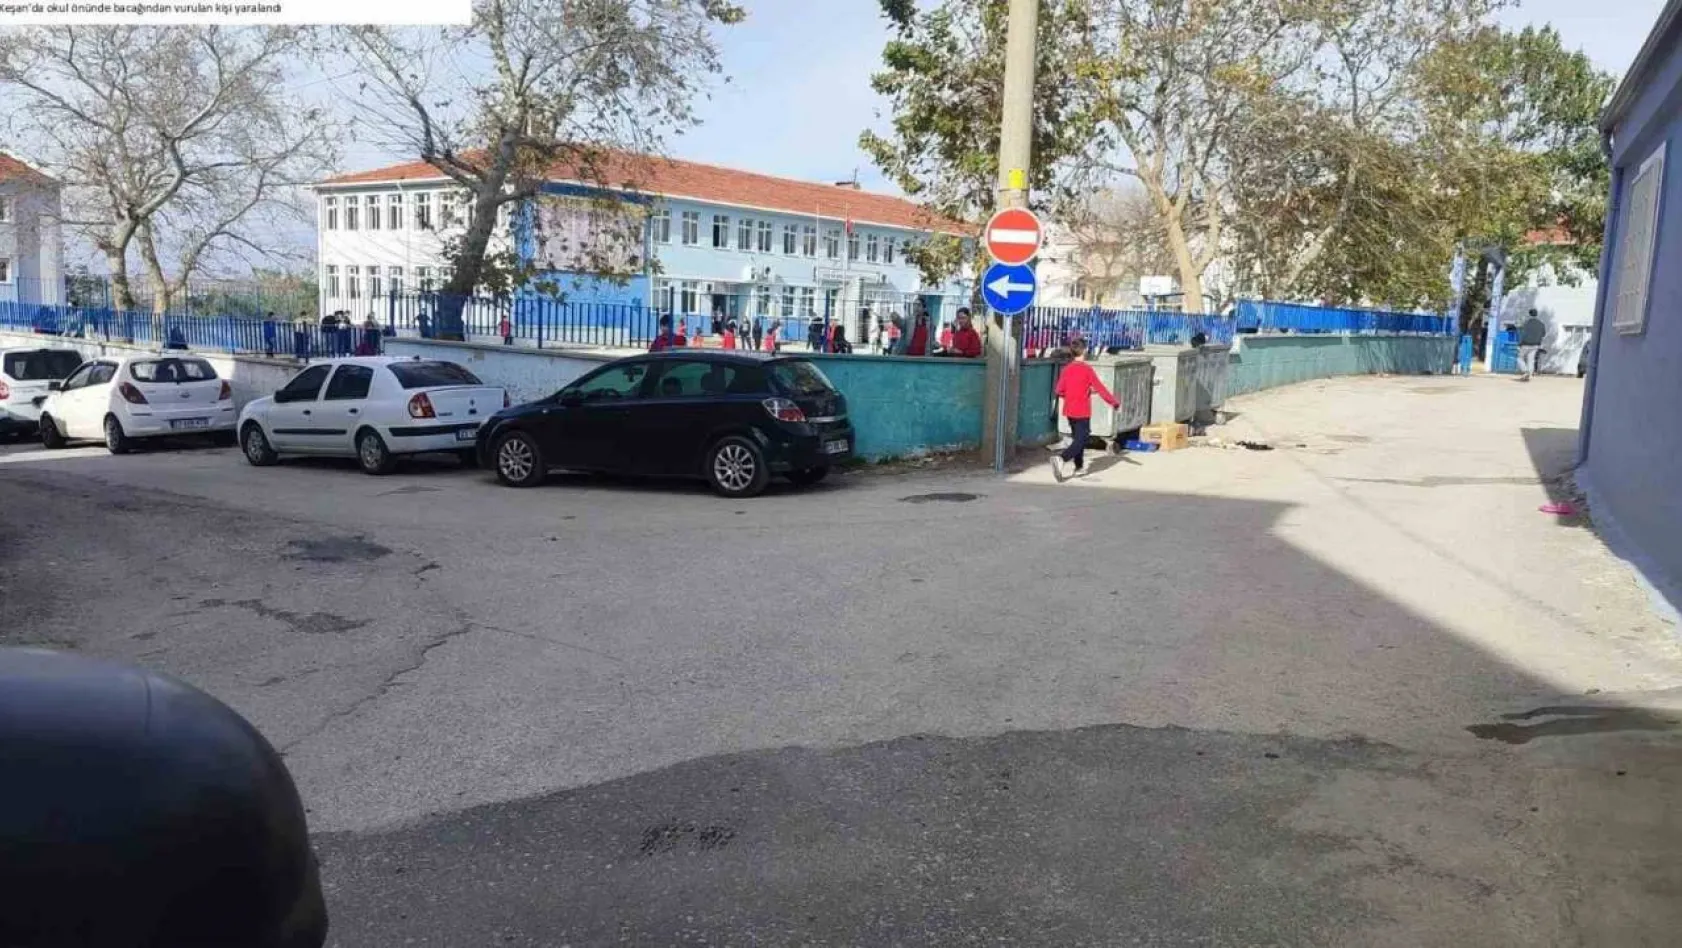 Keşan'da okul önünde bacağından vurulan kişi yaralandı